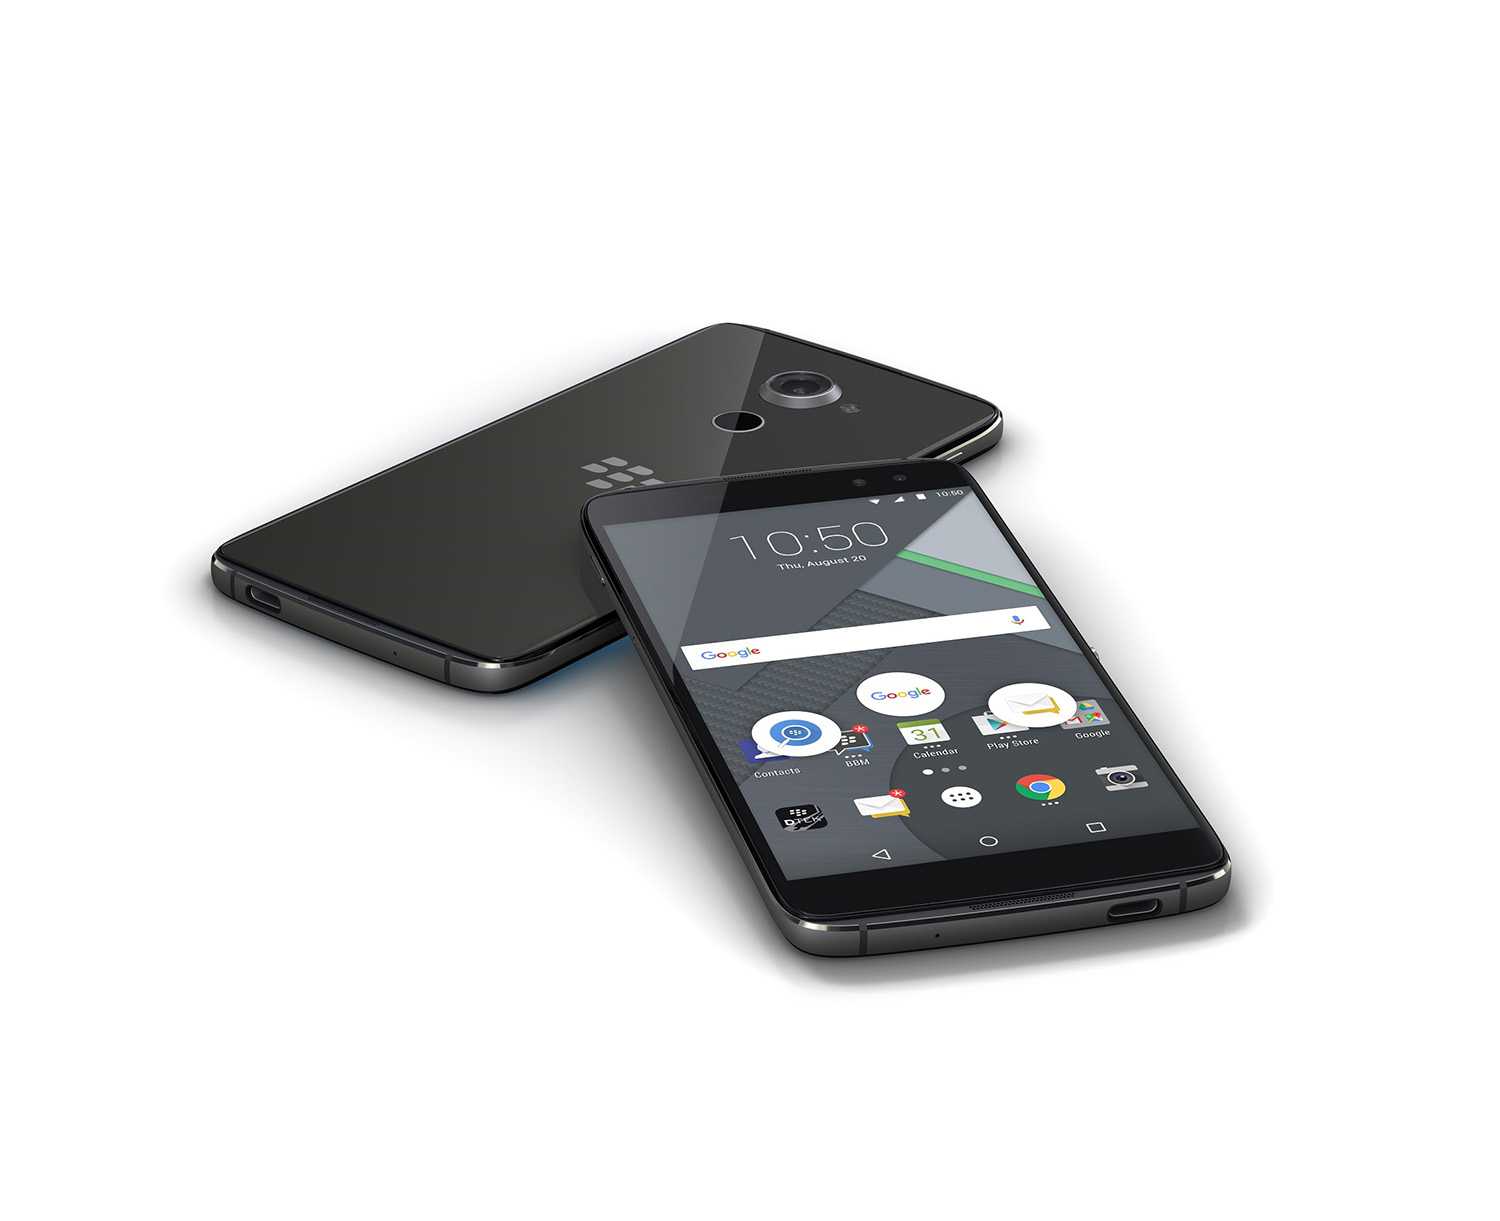 Blackberry dtek60 - купить , скидки, цена, отзывы, обзор, характеристики - мобильные телефоны